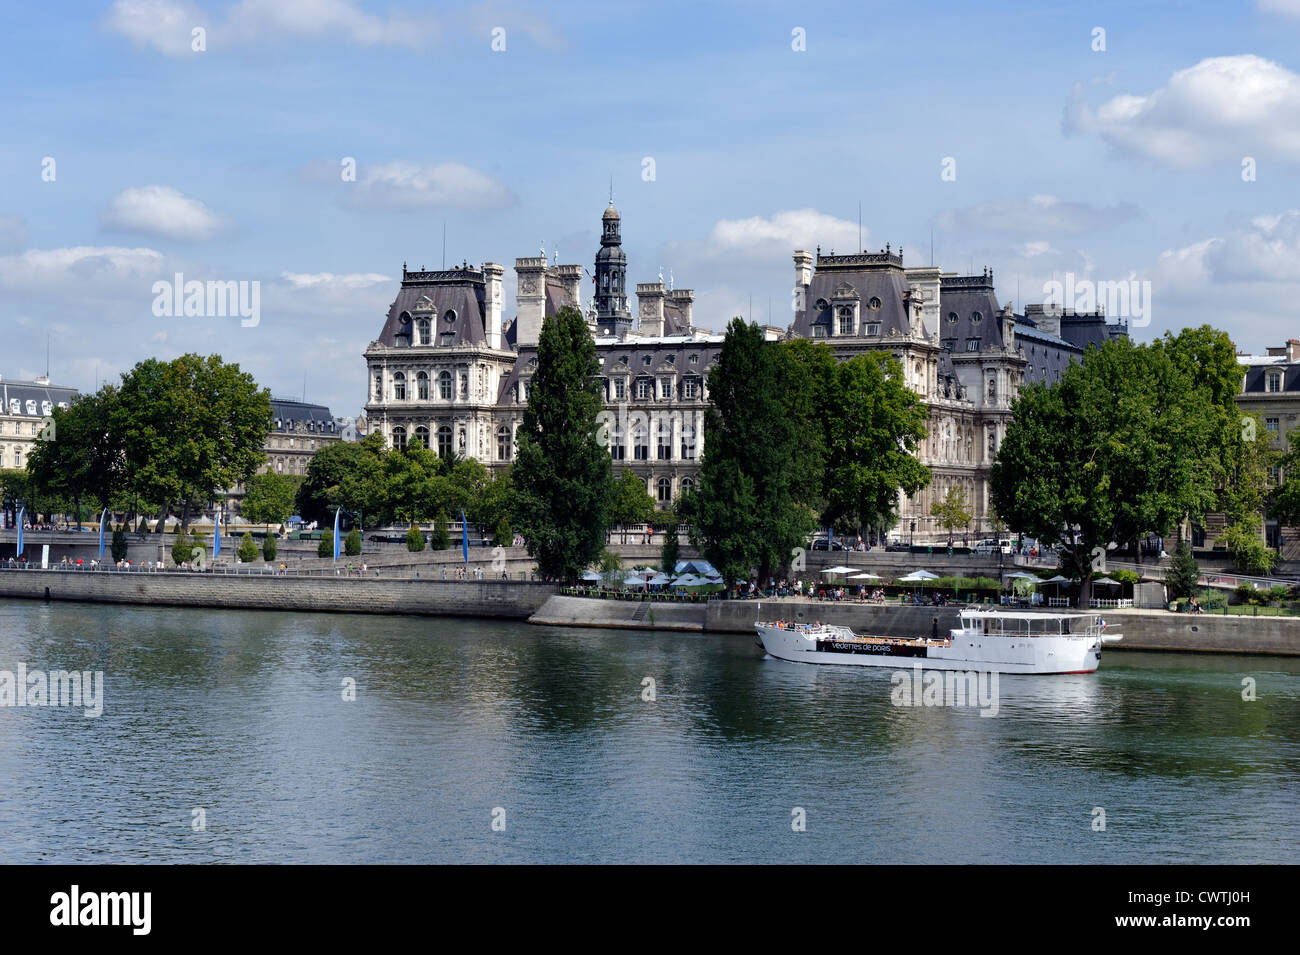 Bâtiment classique de l'architecture française le long de la Seine à Paris Banque D'Images